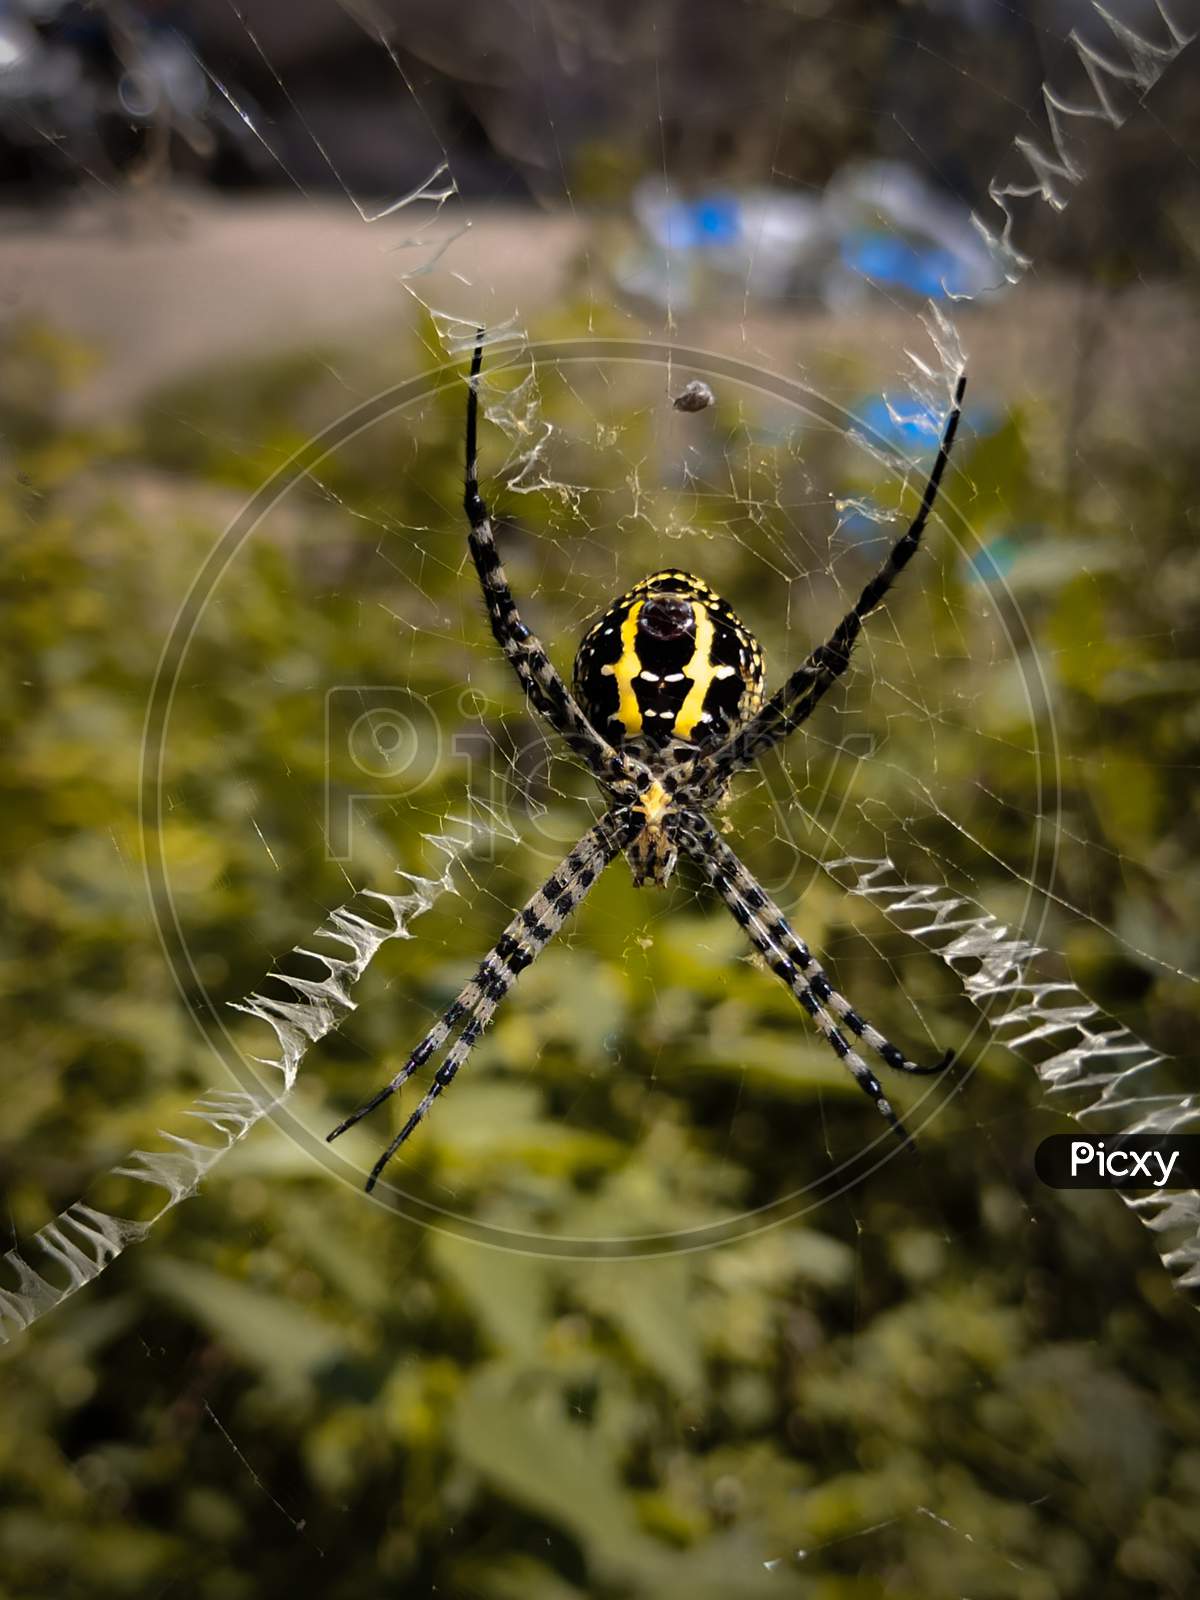 Spider image